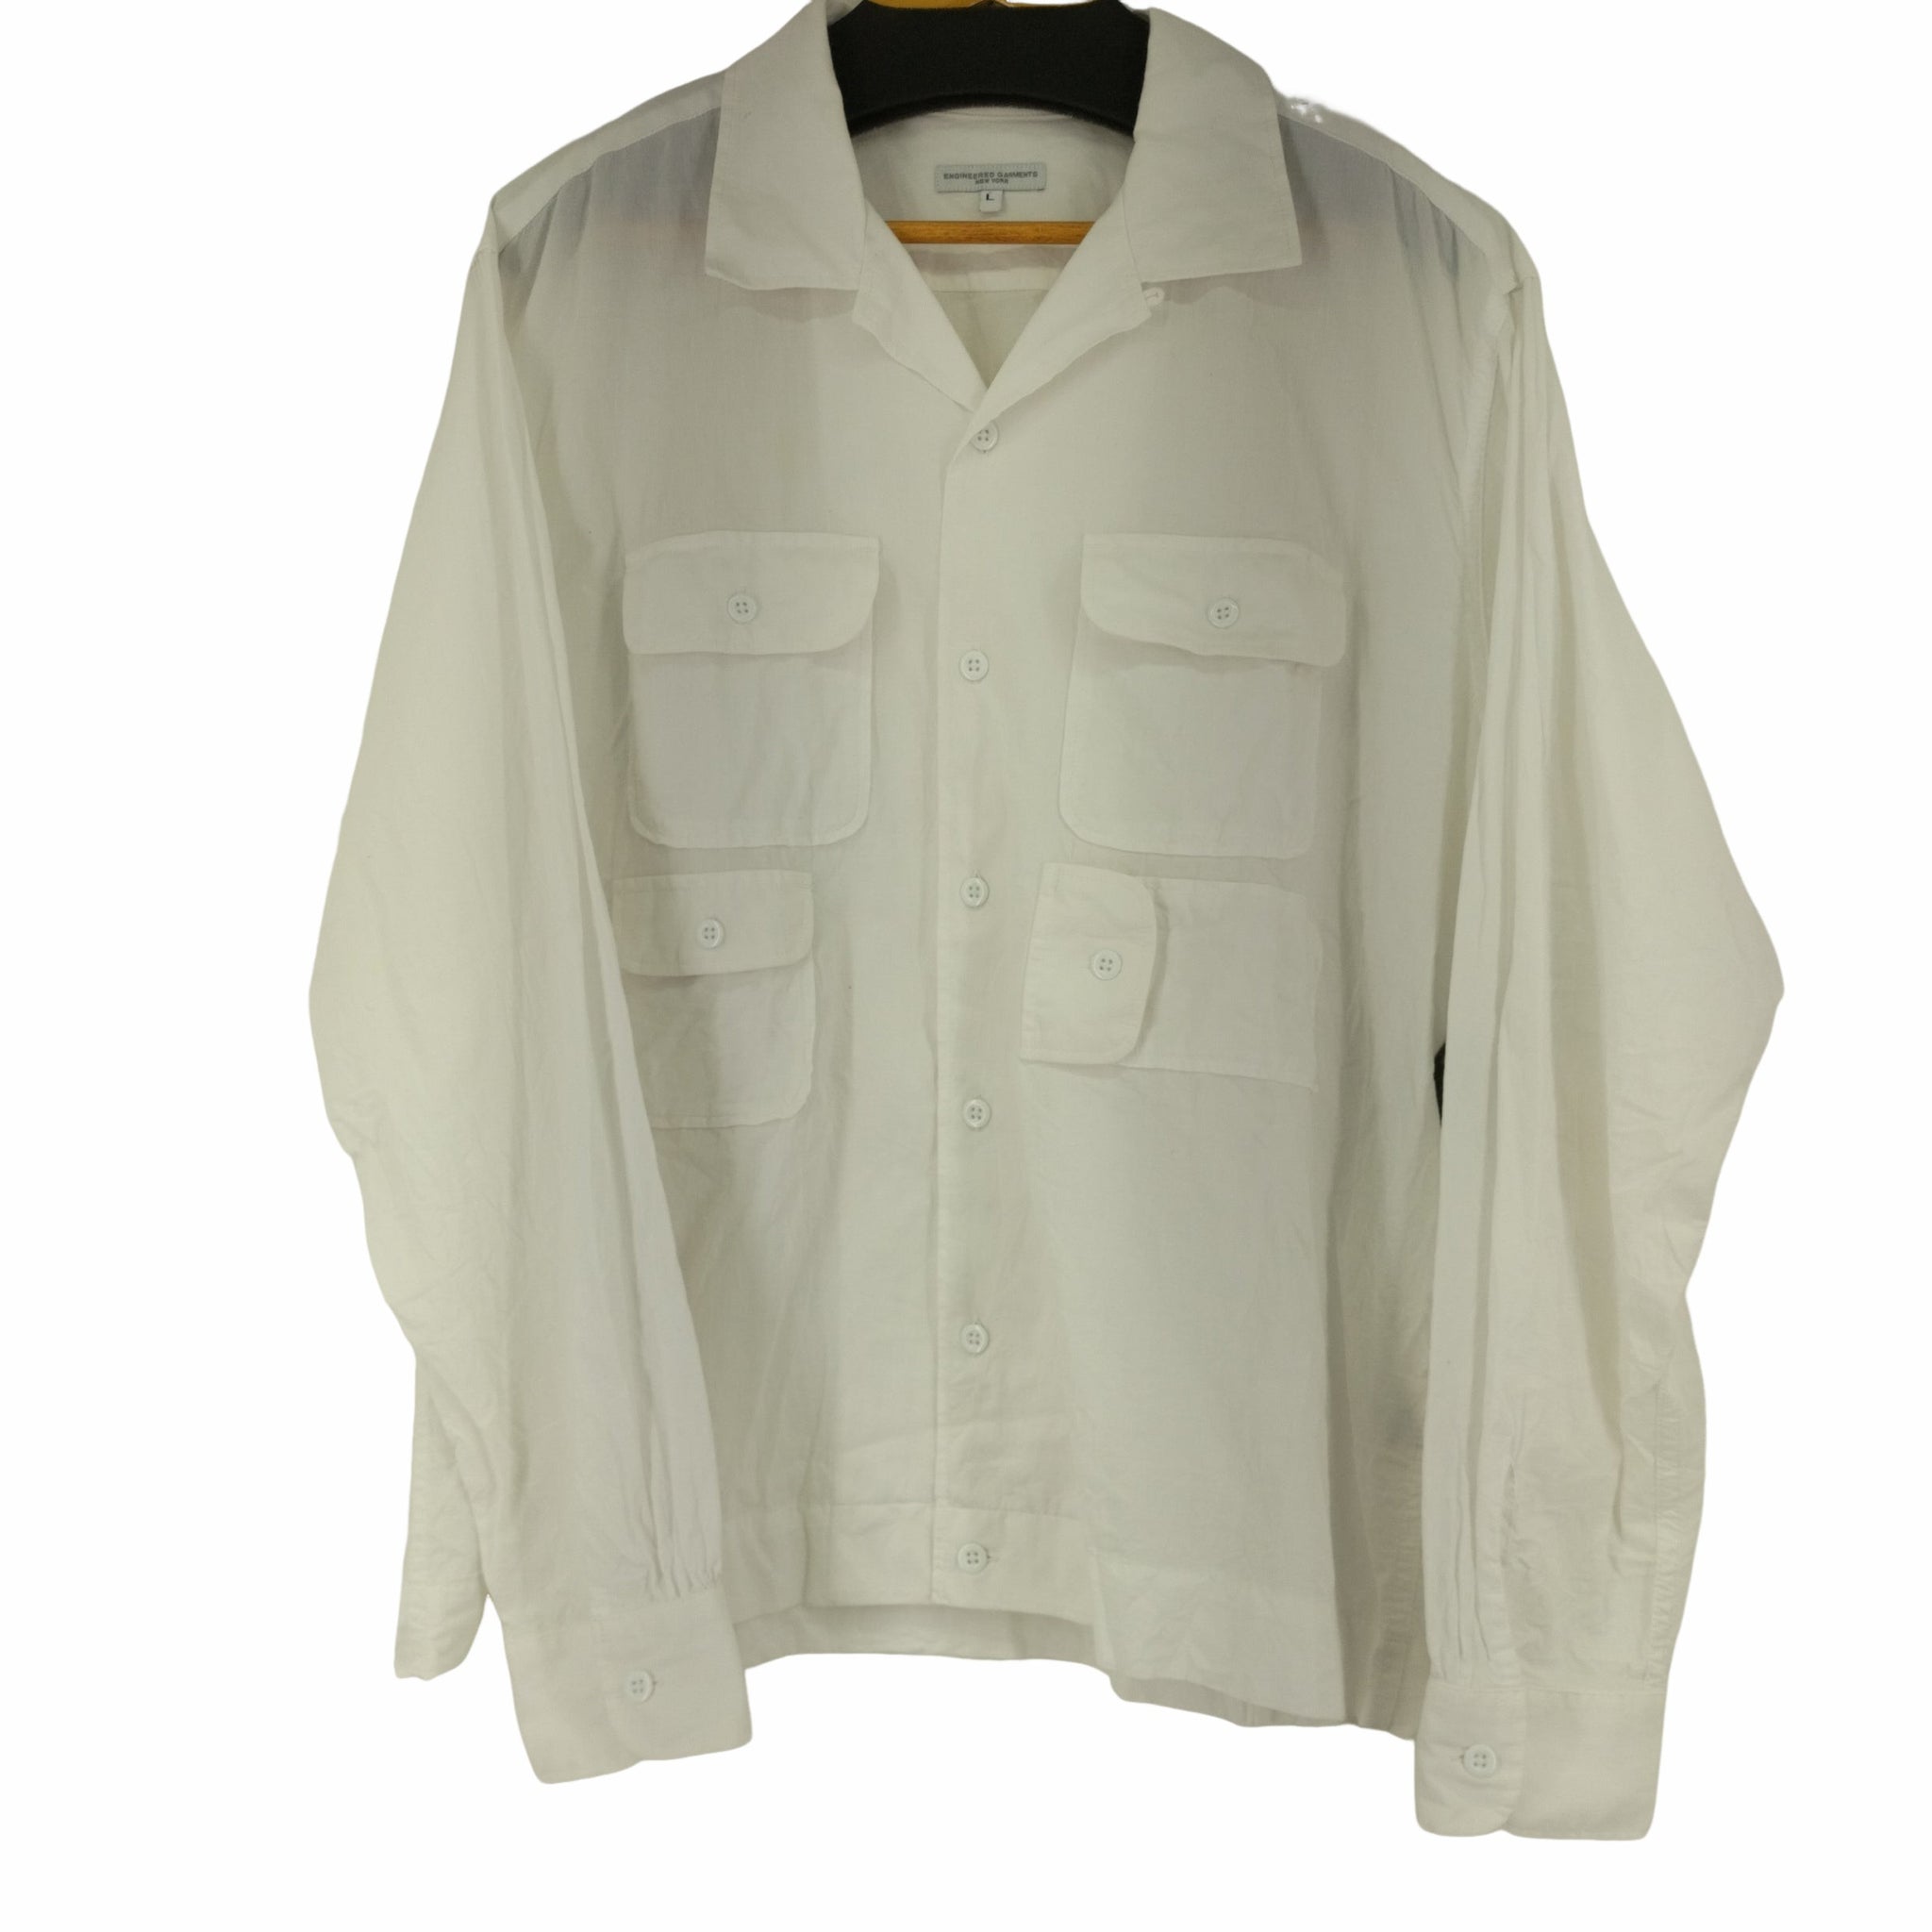 Engineered Garments(エンジニアードガーメンツ)マルチポケット オープンカラーシャツ